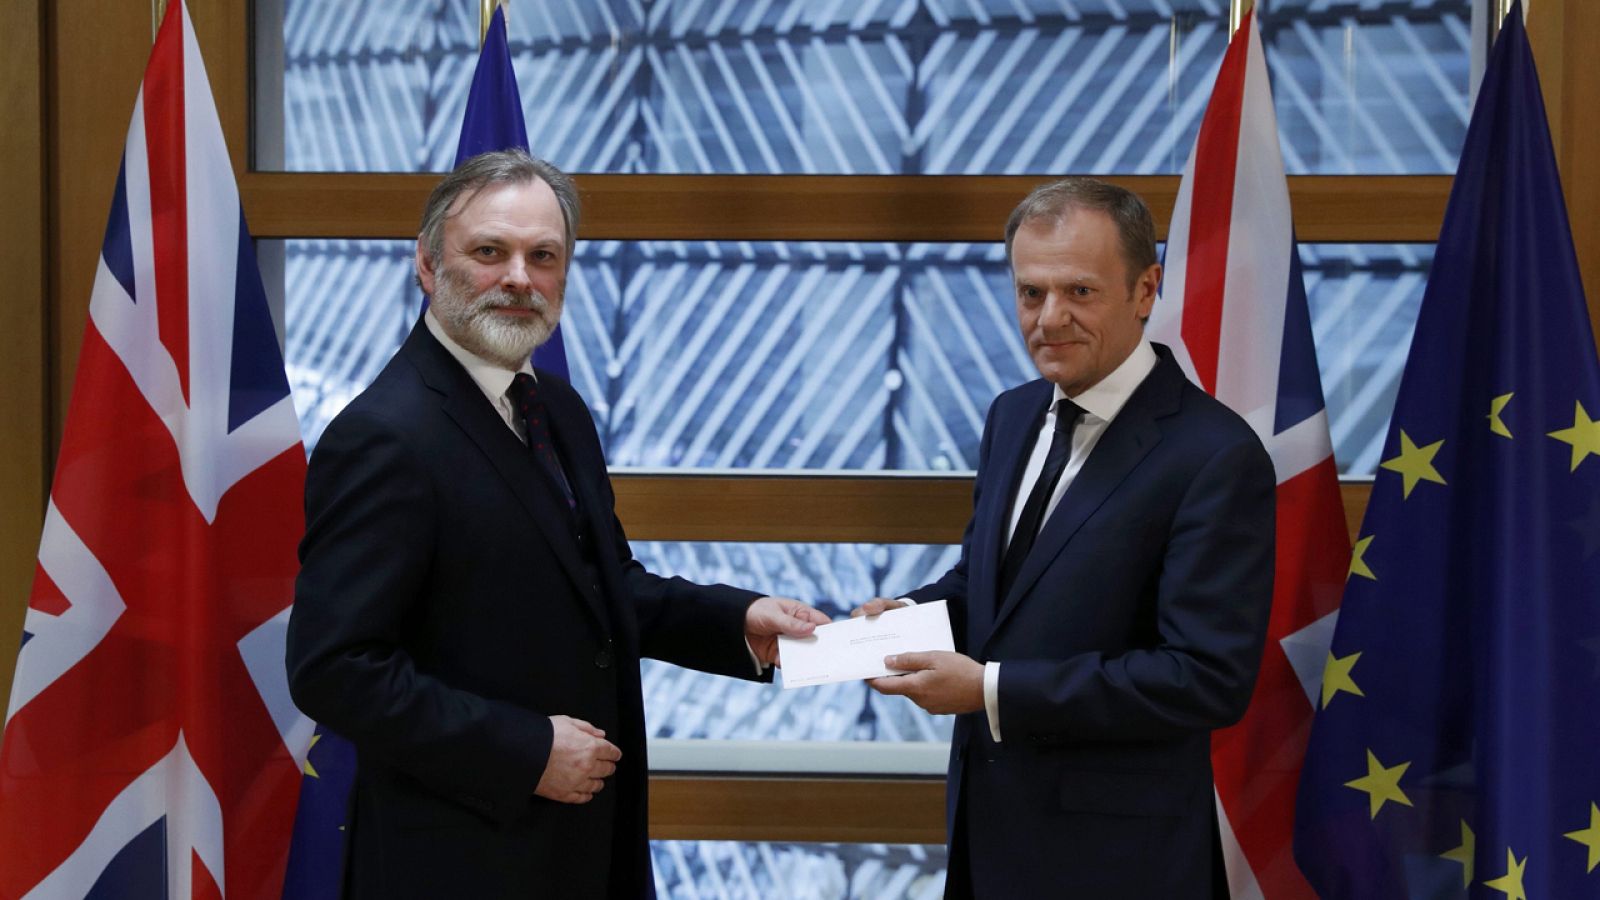 El presidente del Consejo Europeo, Donald Tusk recibe la carta que activa el proceso de salida de Reino Unido de la Unión de manos del embajador británico ante la Unión Europea, Tim Barrow.